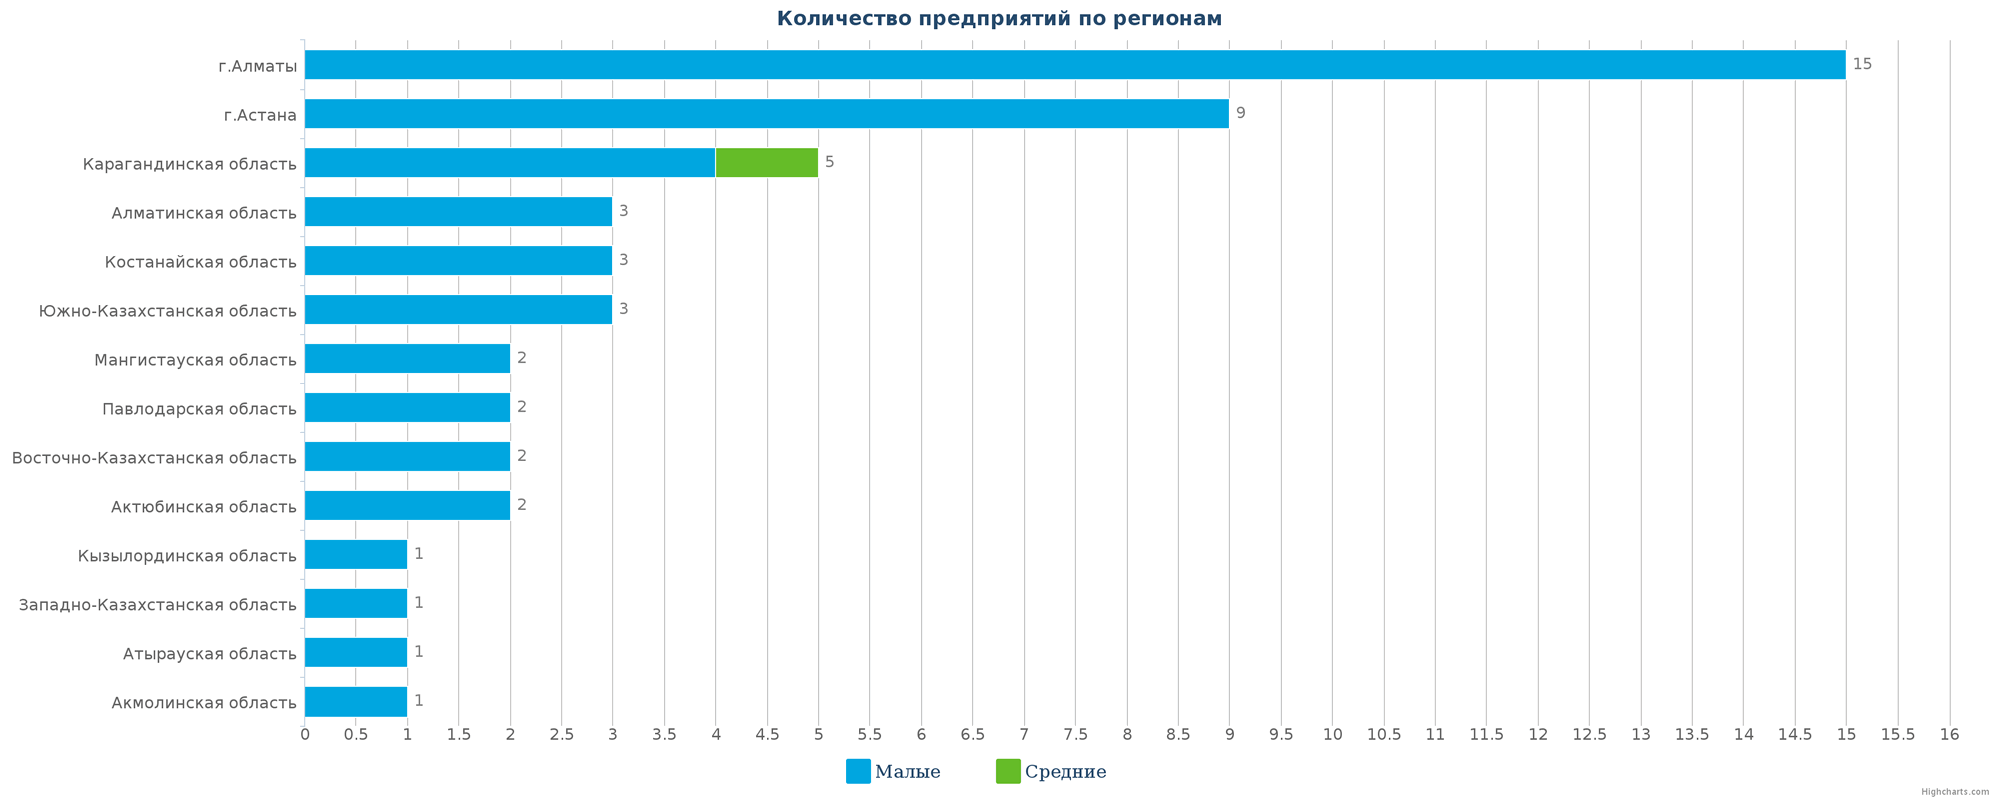 Количество новых промышленных организаций по регионам Казахстана